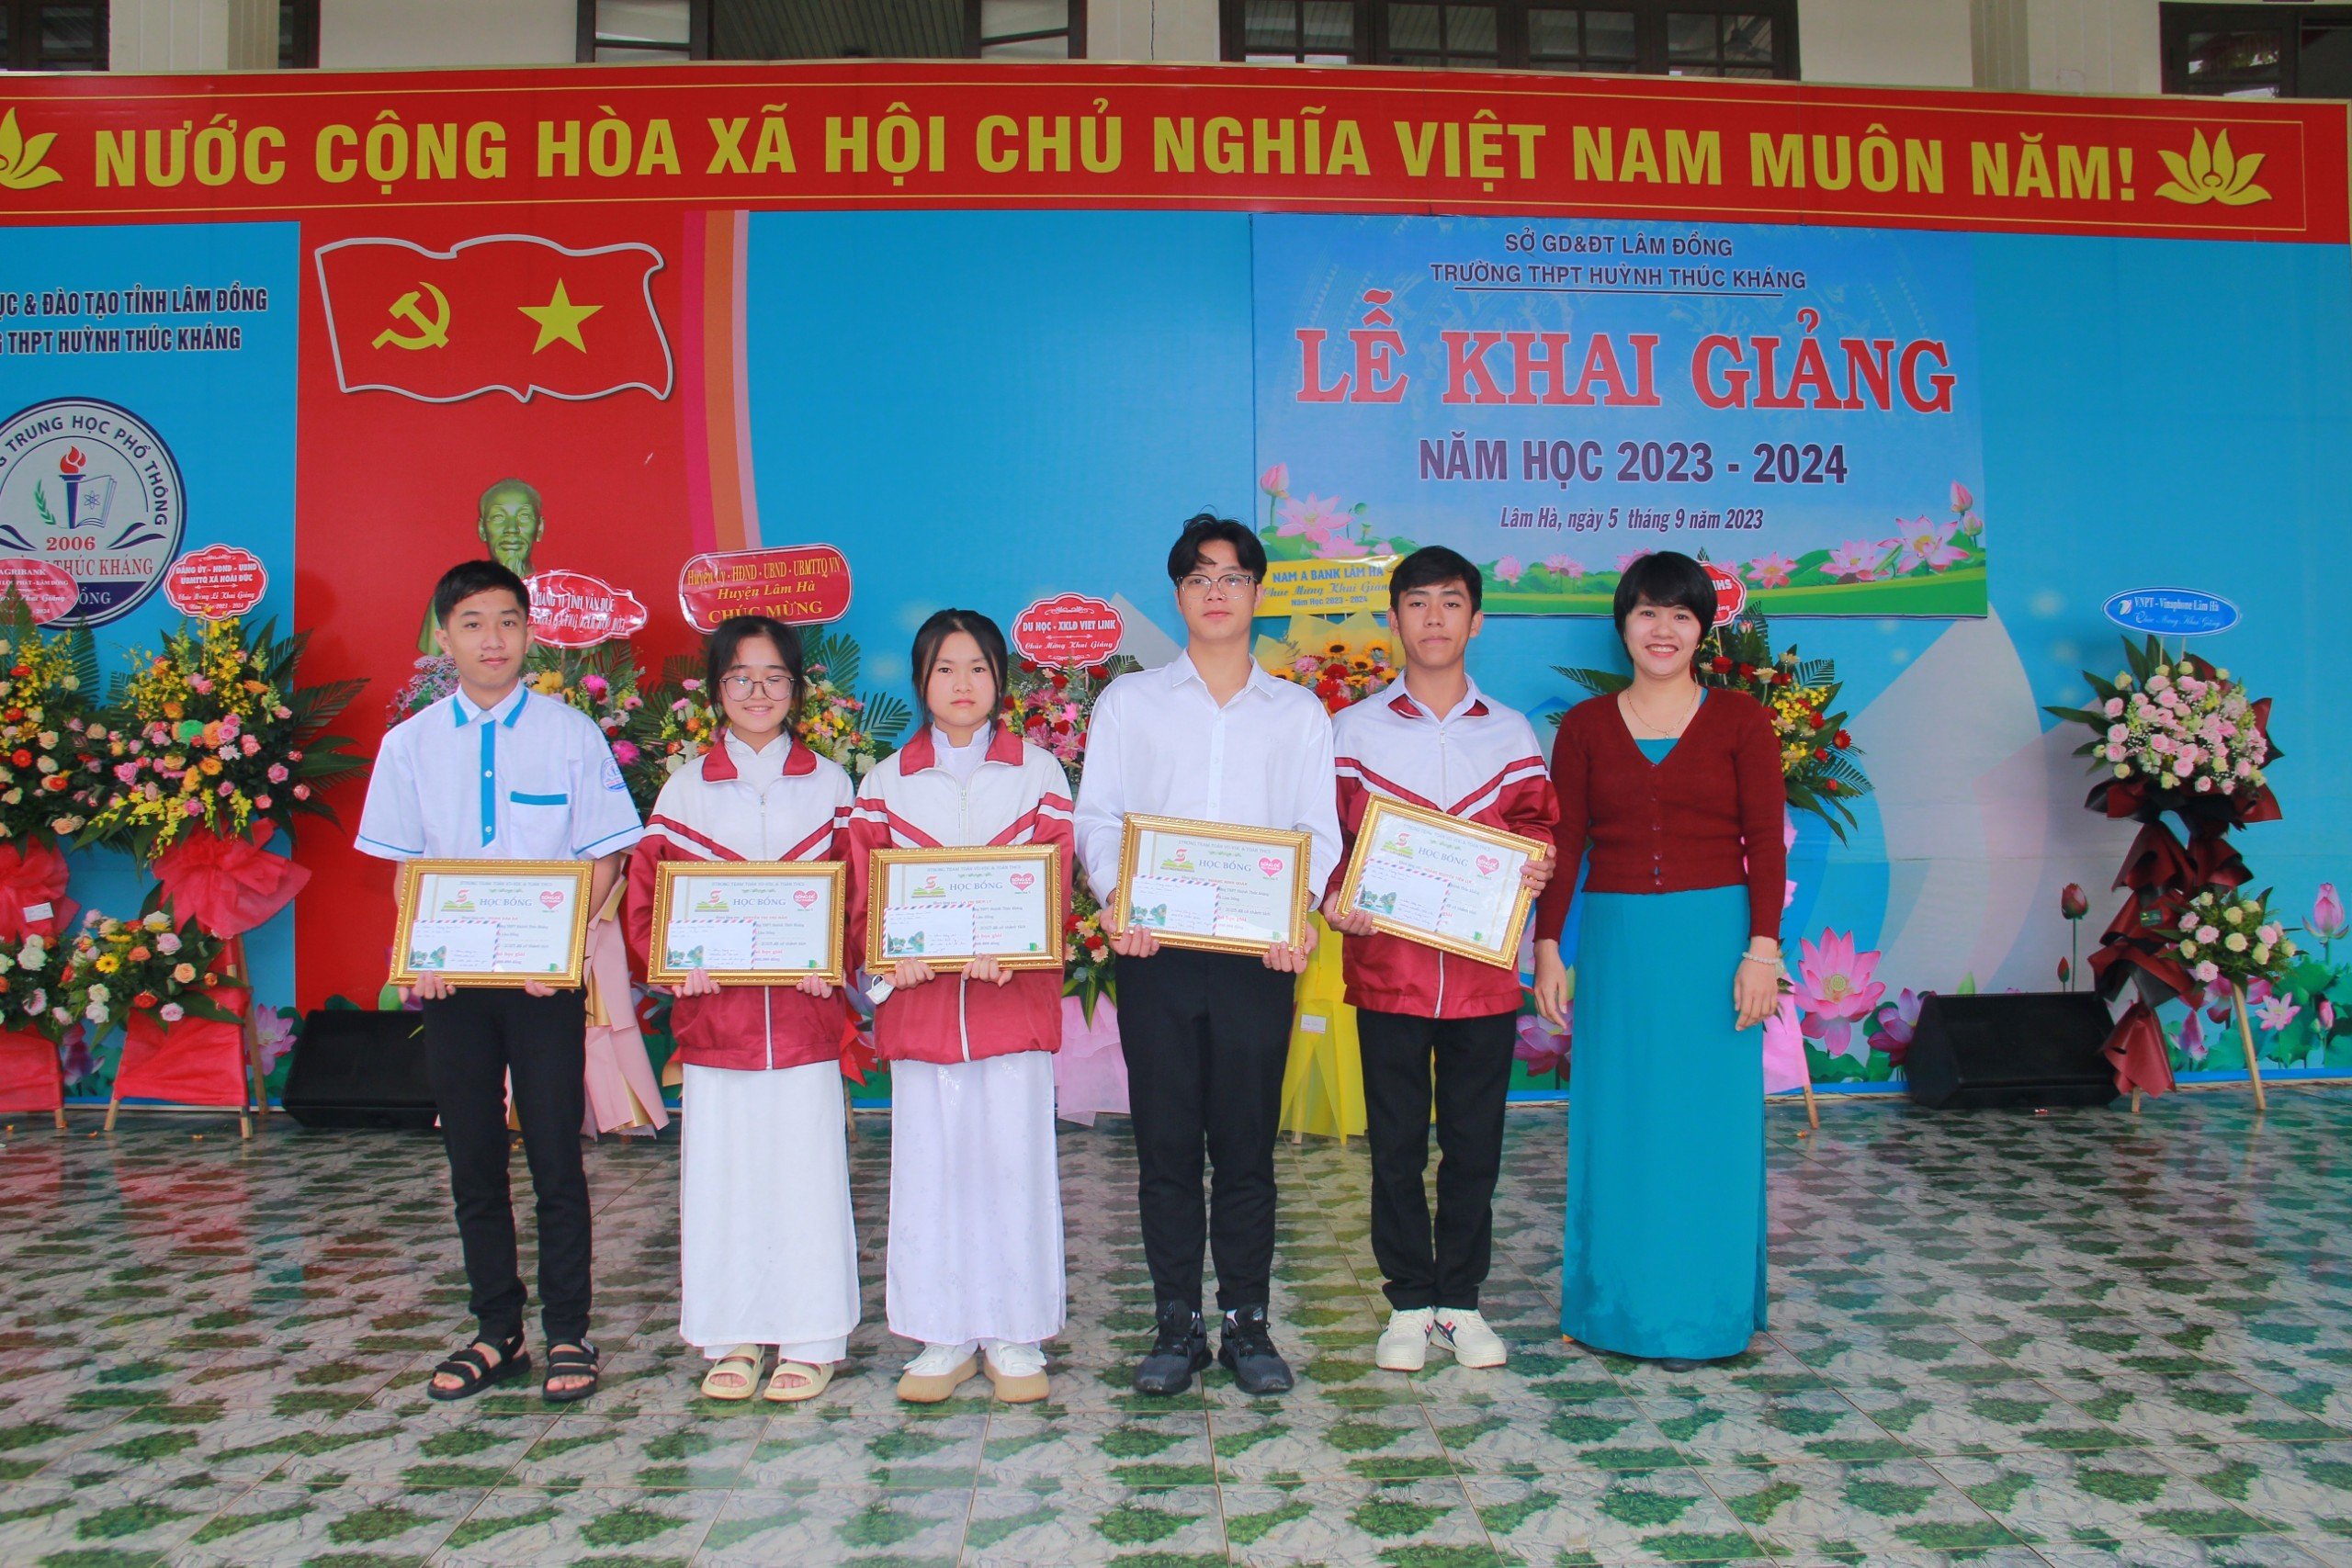 Cô Bùi Thúy Vân - Nhóm Toán team Vận dụng- Vận dụng cao trao học bổng cho các em vượt khó học giỏi trong năm học 2022-2023.